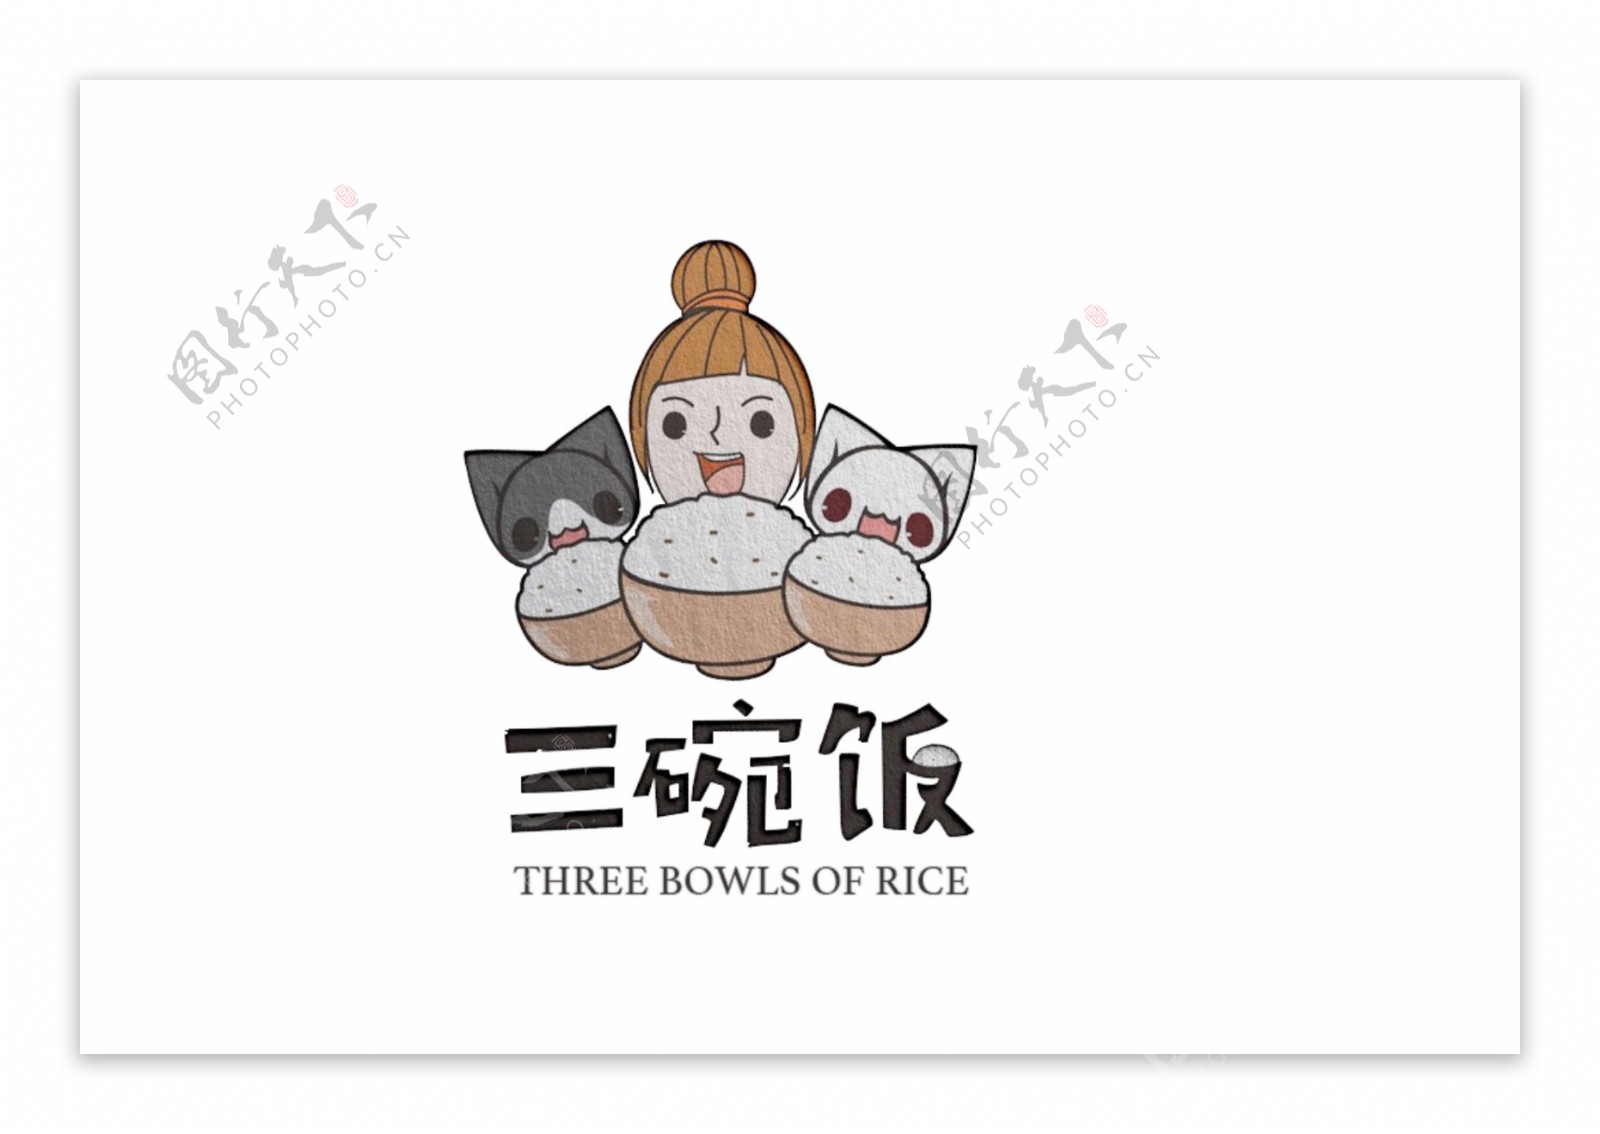 卡通喵咪和卡通美女的三碗饭logo设计